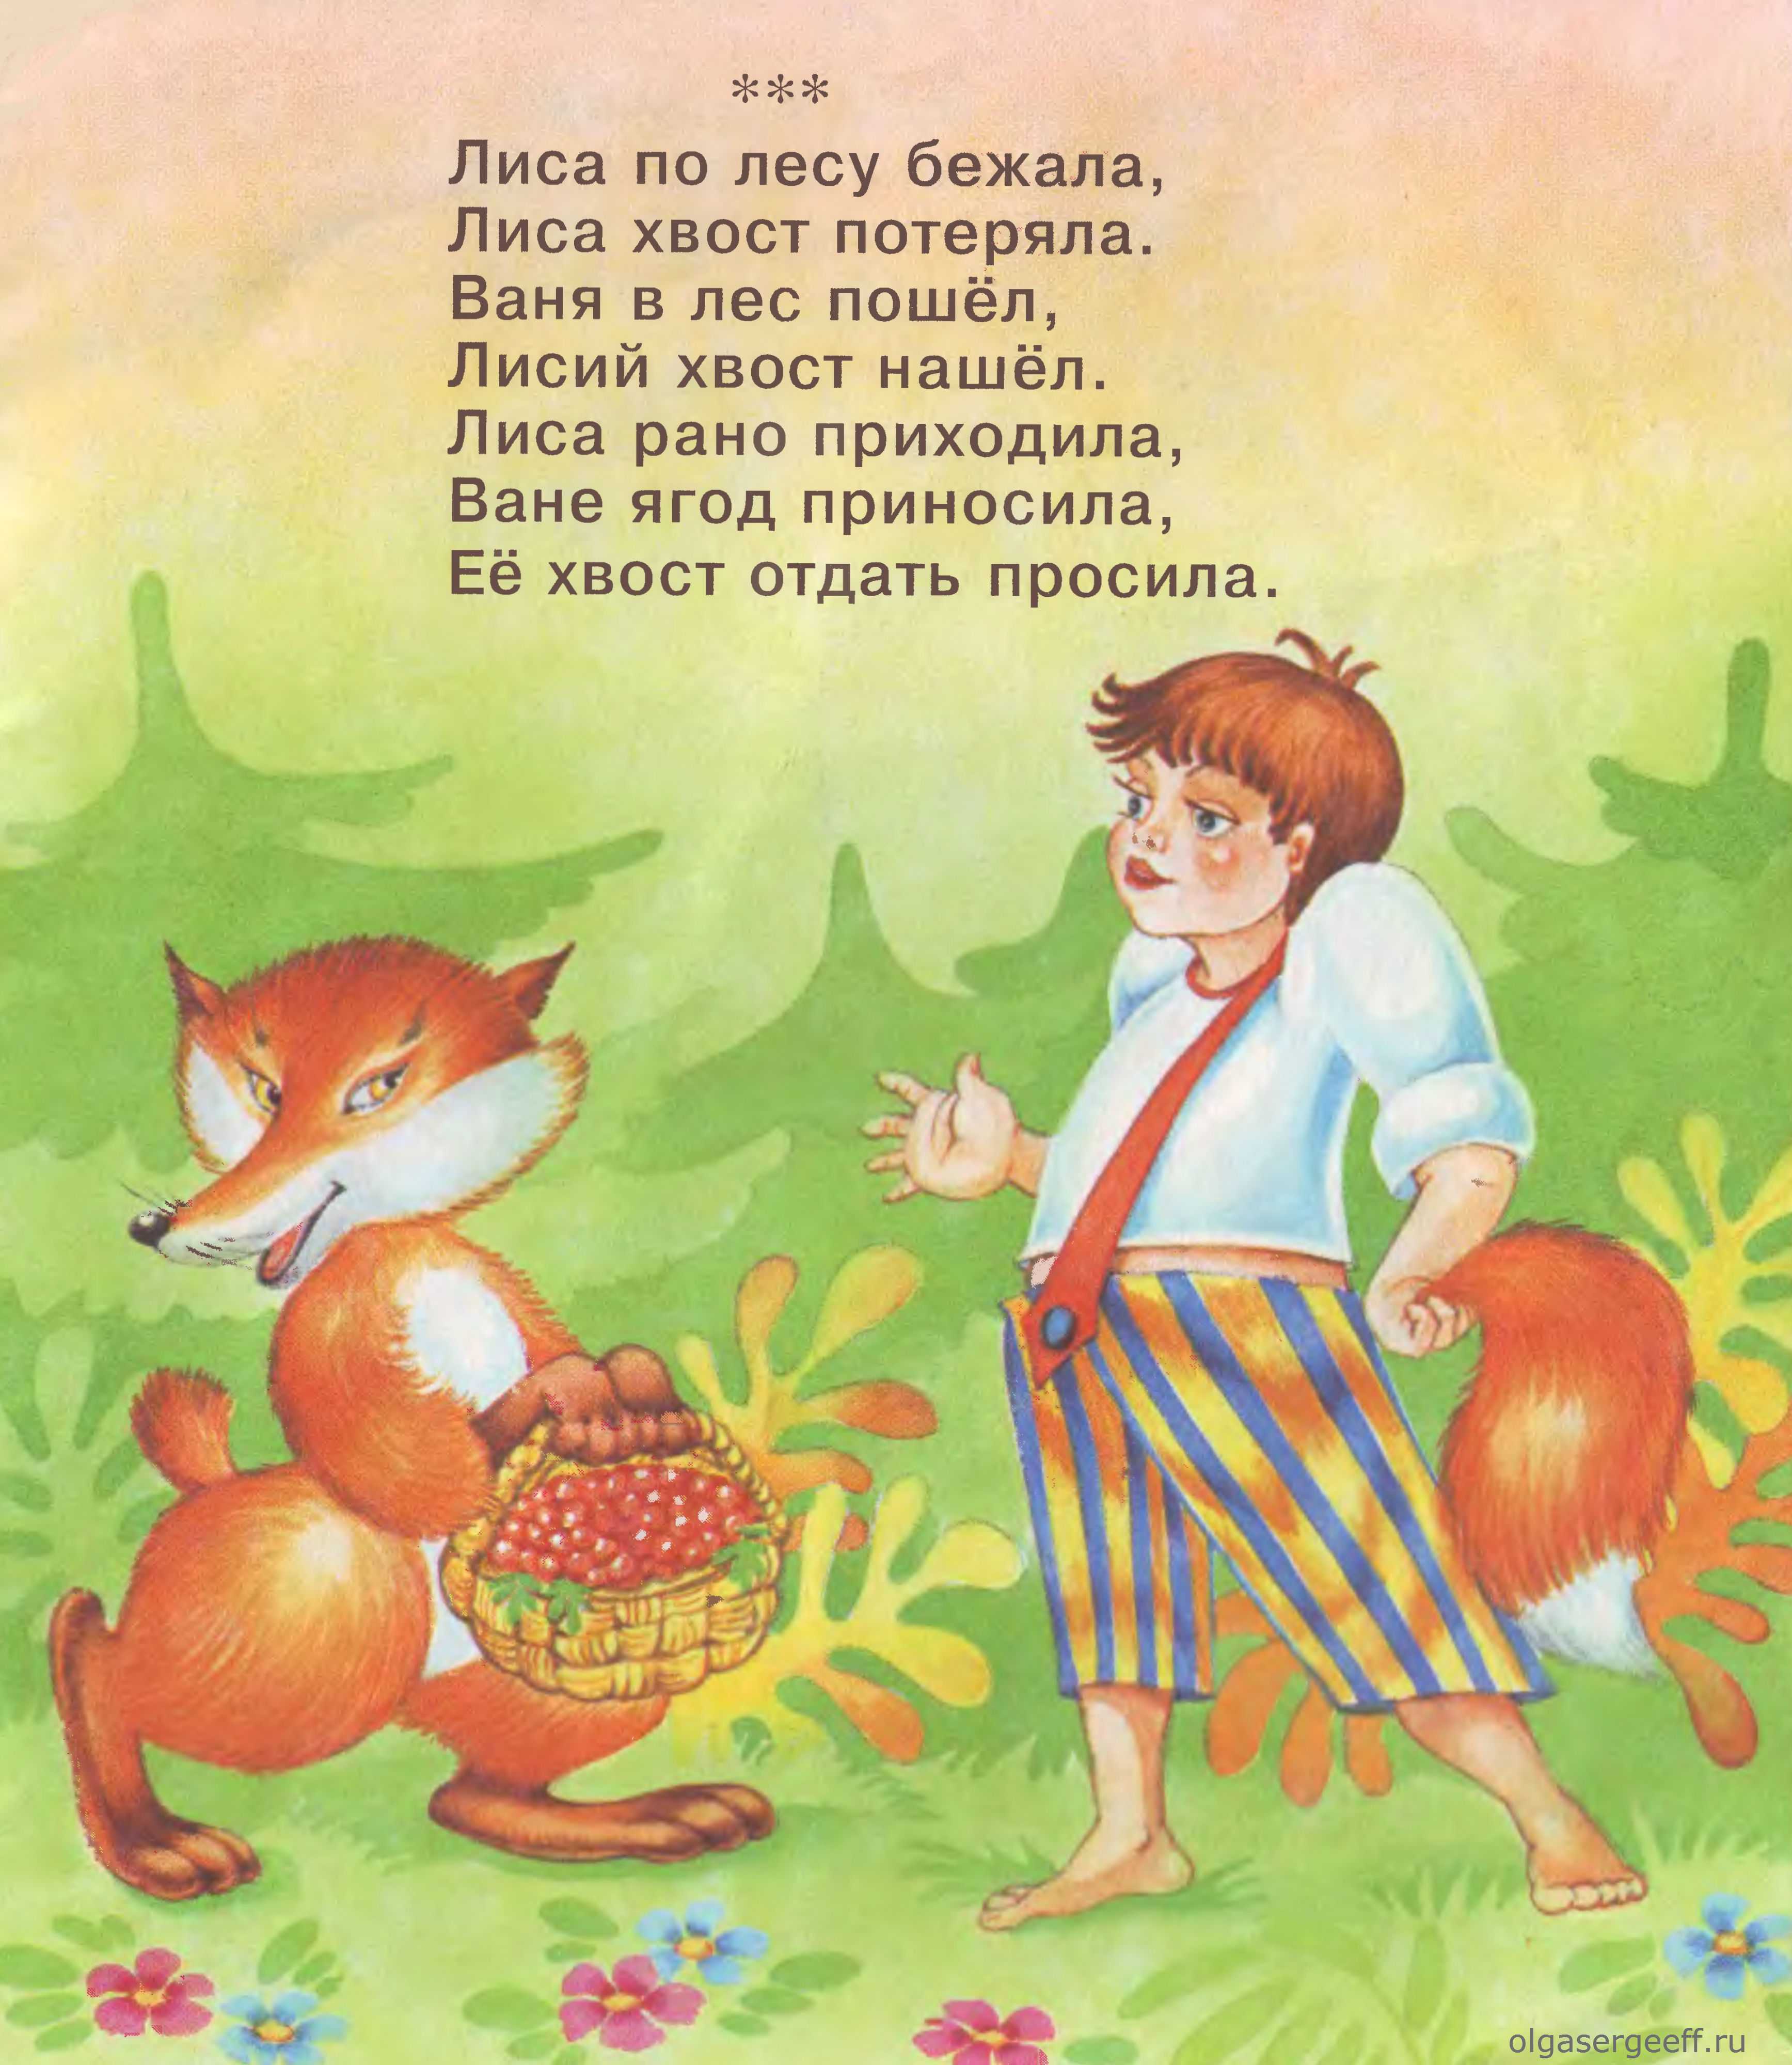 Тексты и примеры русских народных потешек и прибауток для детей на разные случаи